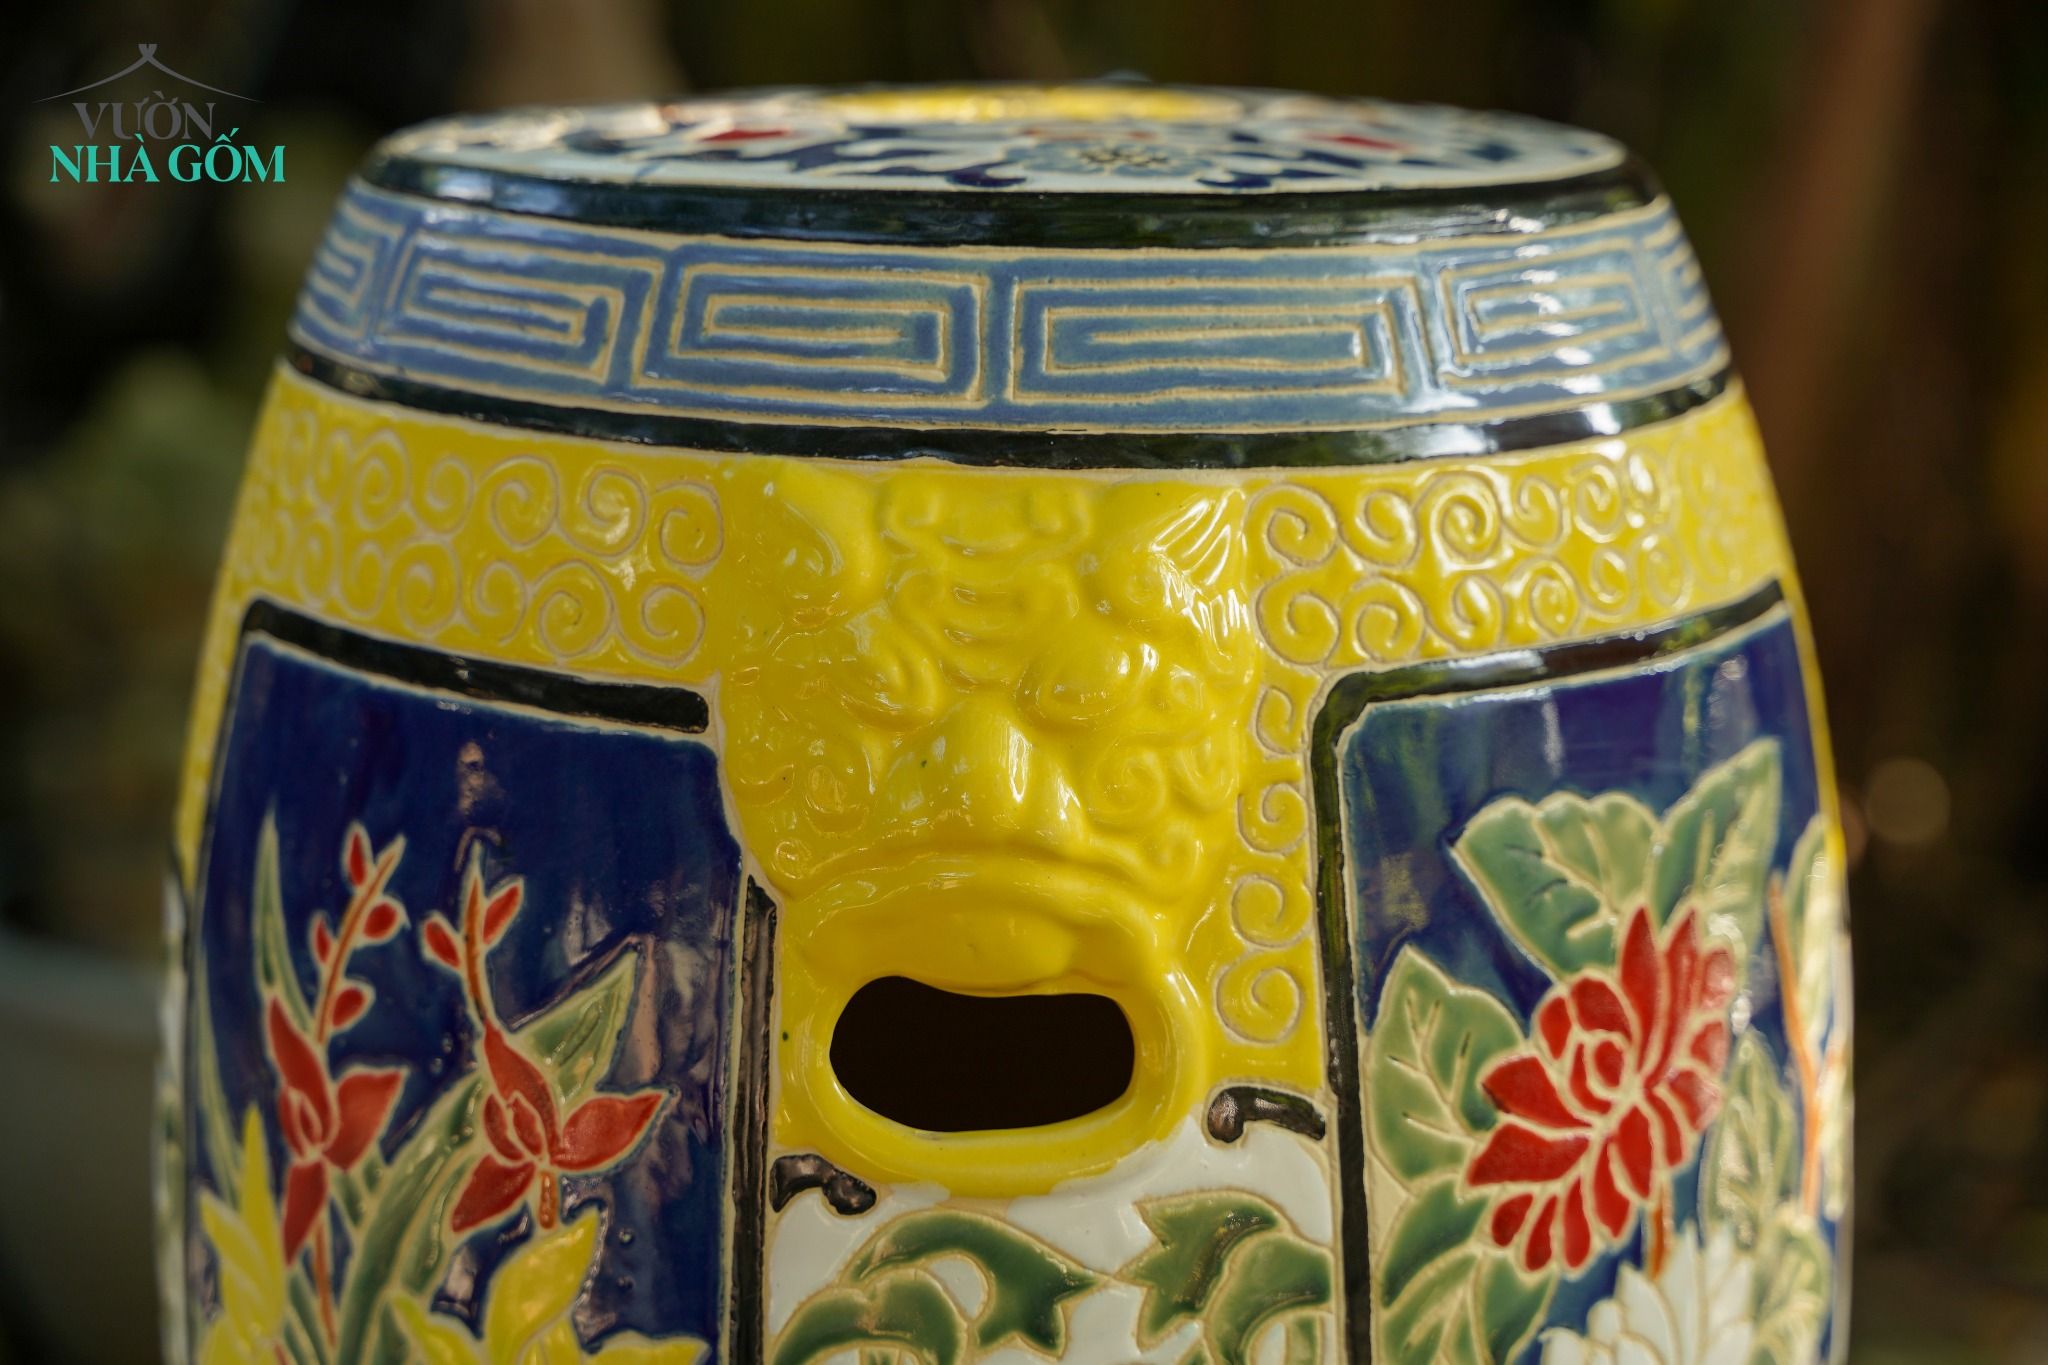  Đôn trống tròn họa tiết Hoa Bốn Mùa, Đôn Tứ Quý, màu vàng, gốm mỹ nghệ Nam Bộ, C45 x R35cm 